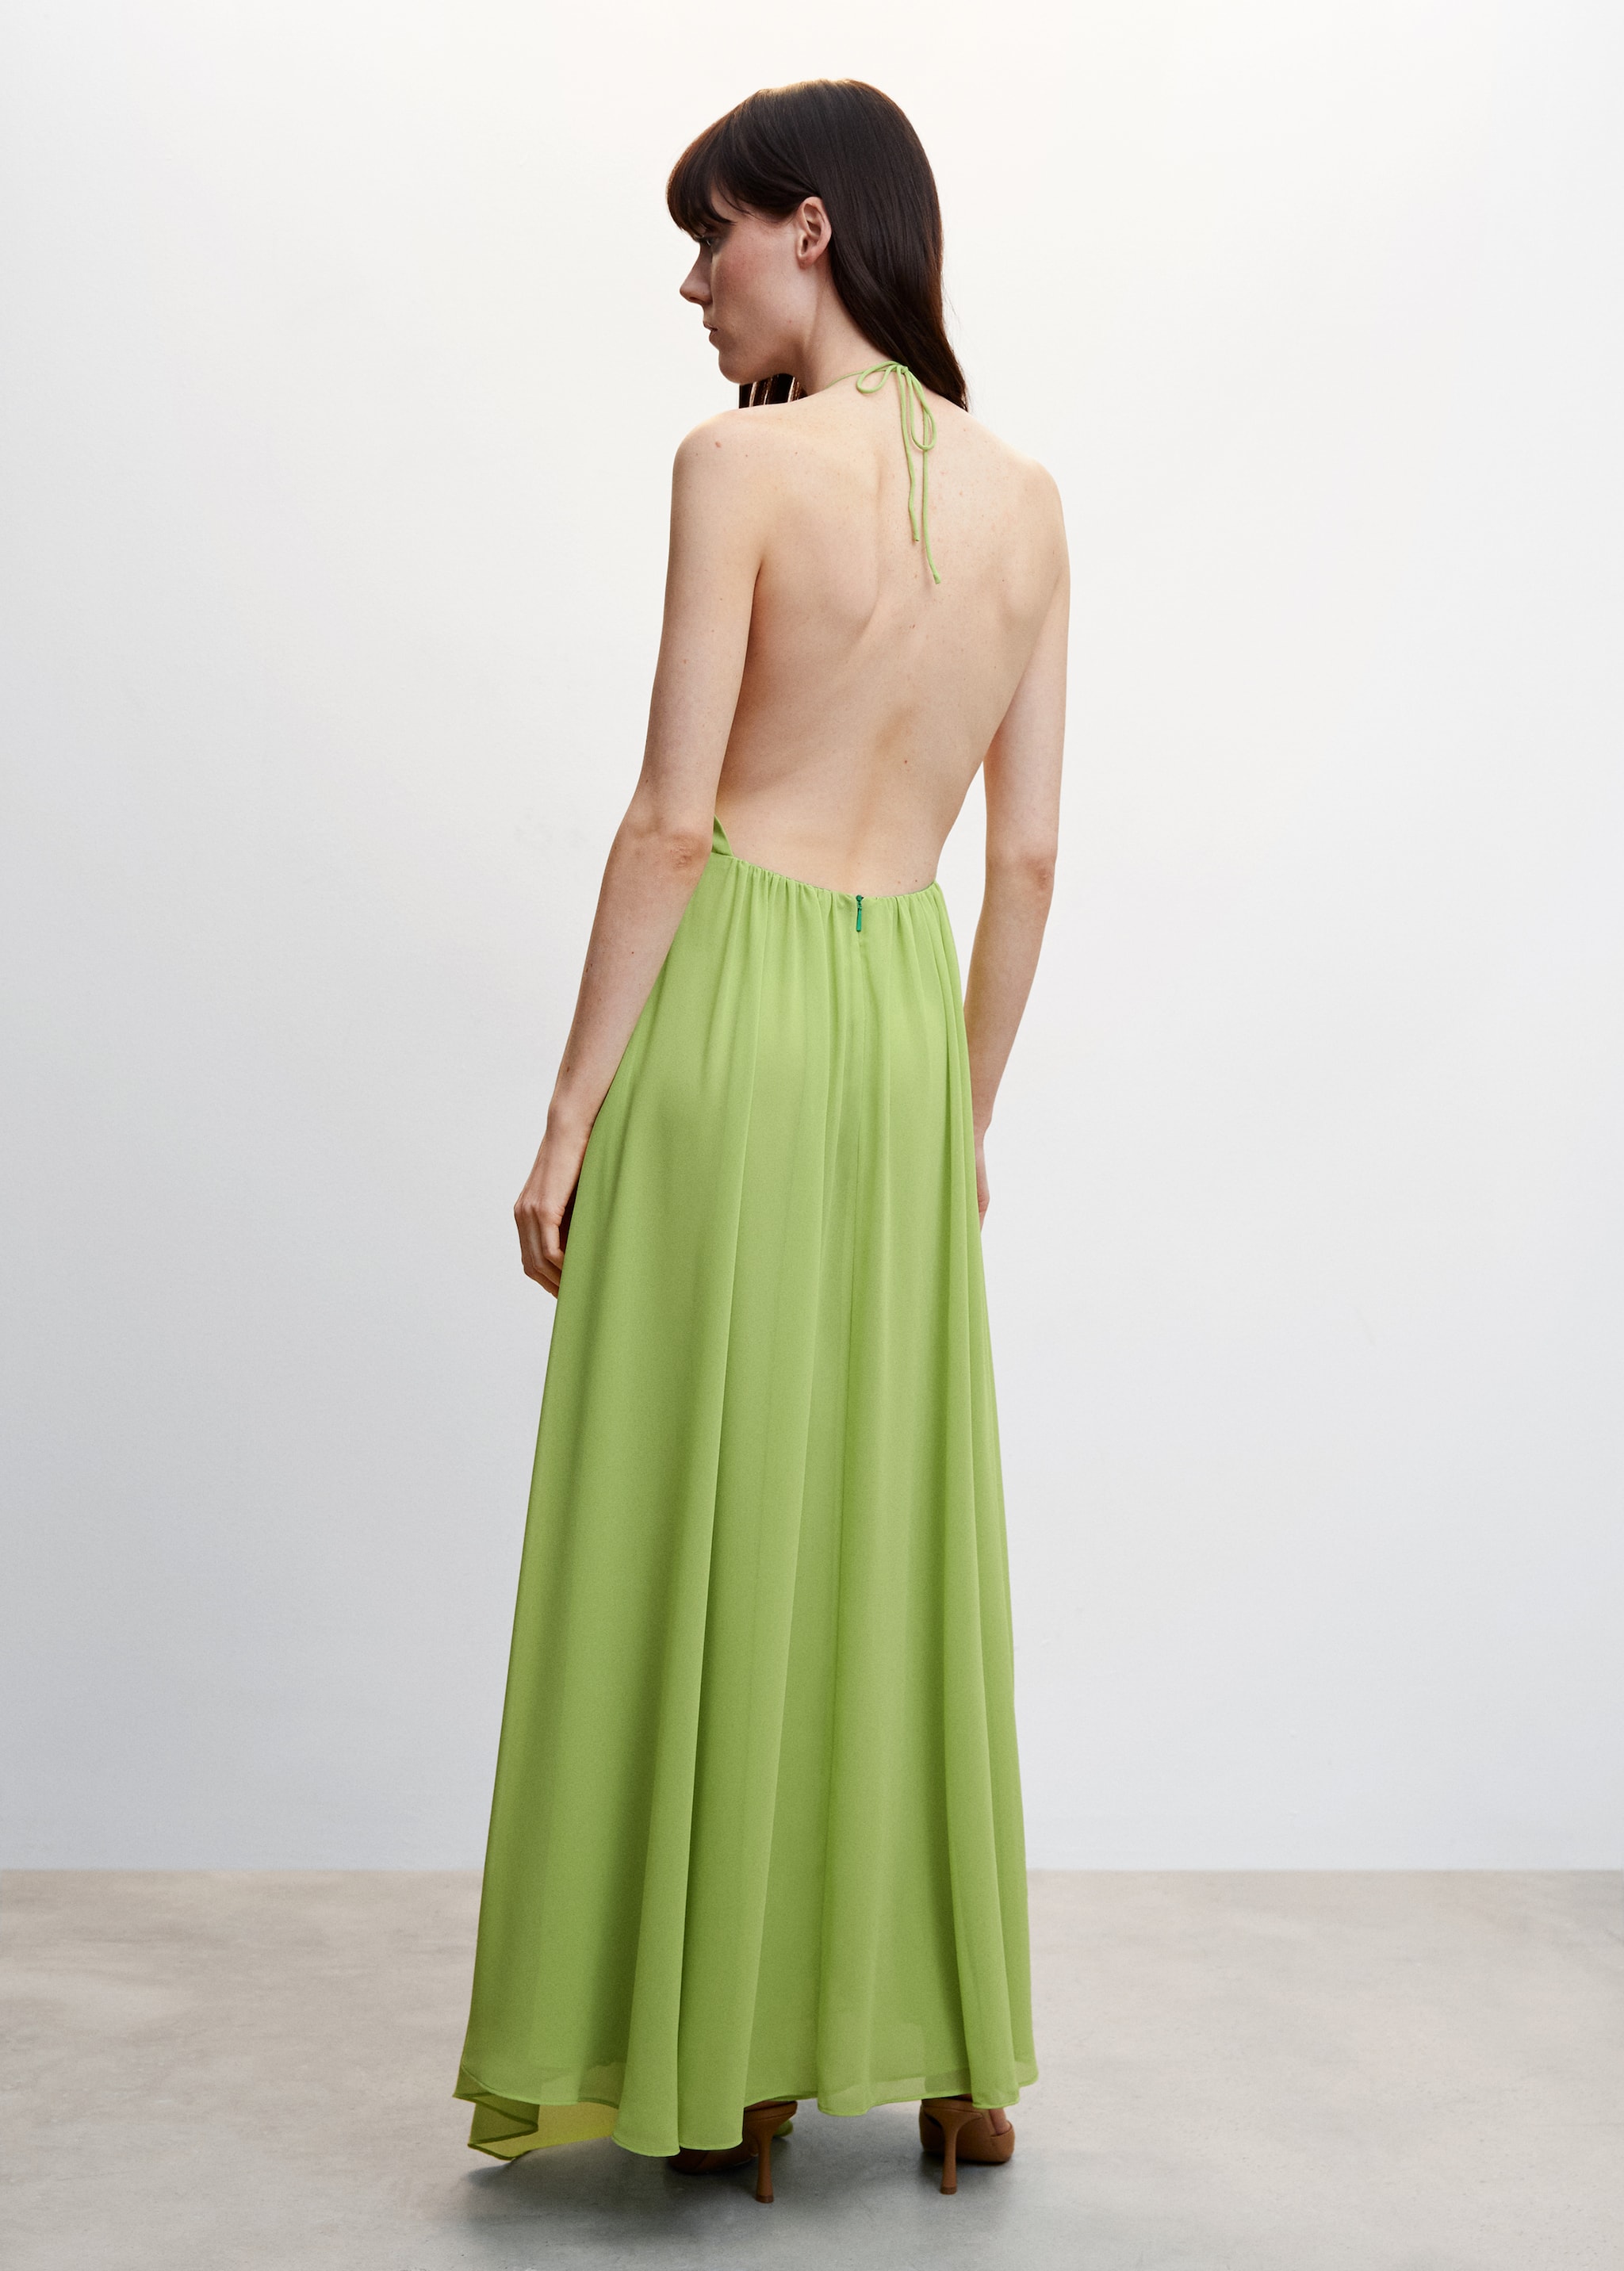 Kleid mit Rückenausschnitt - Rückseite des Artikels